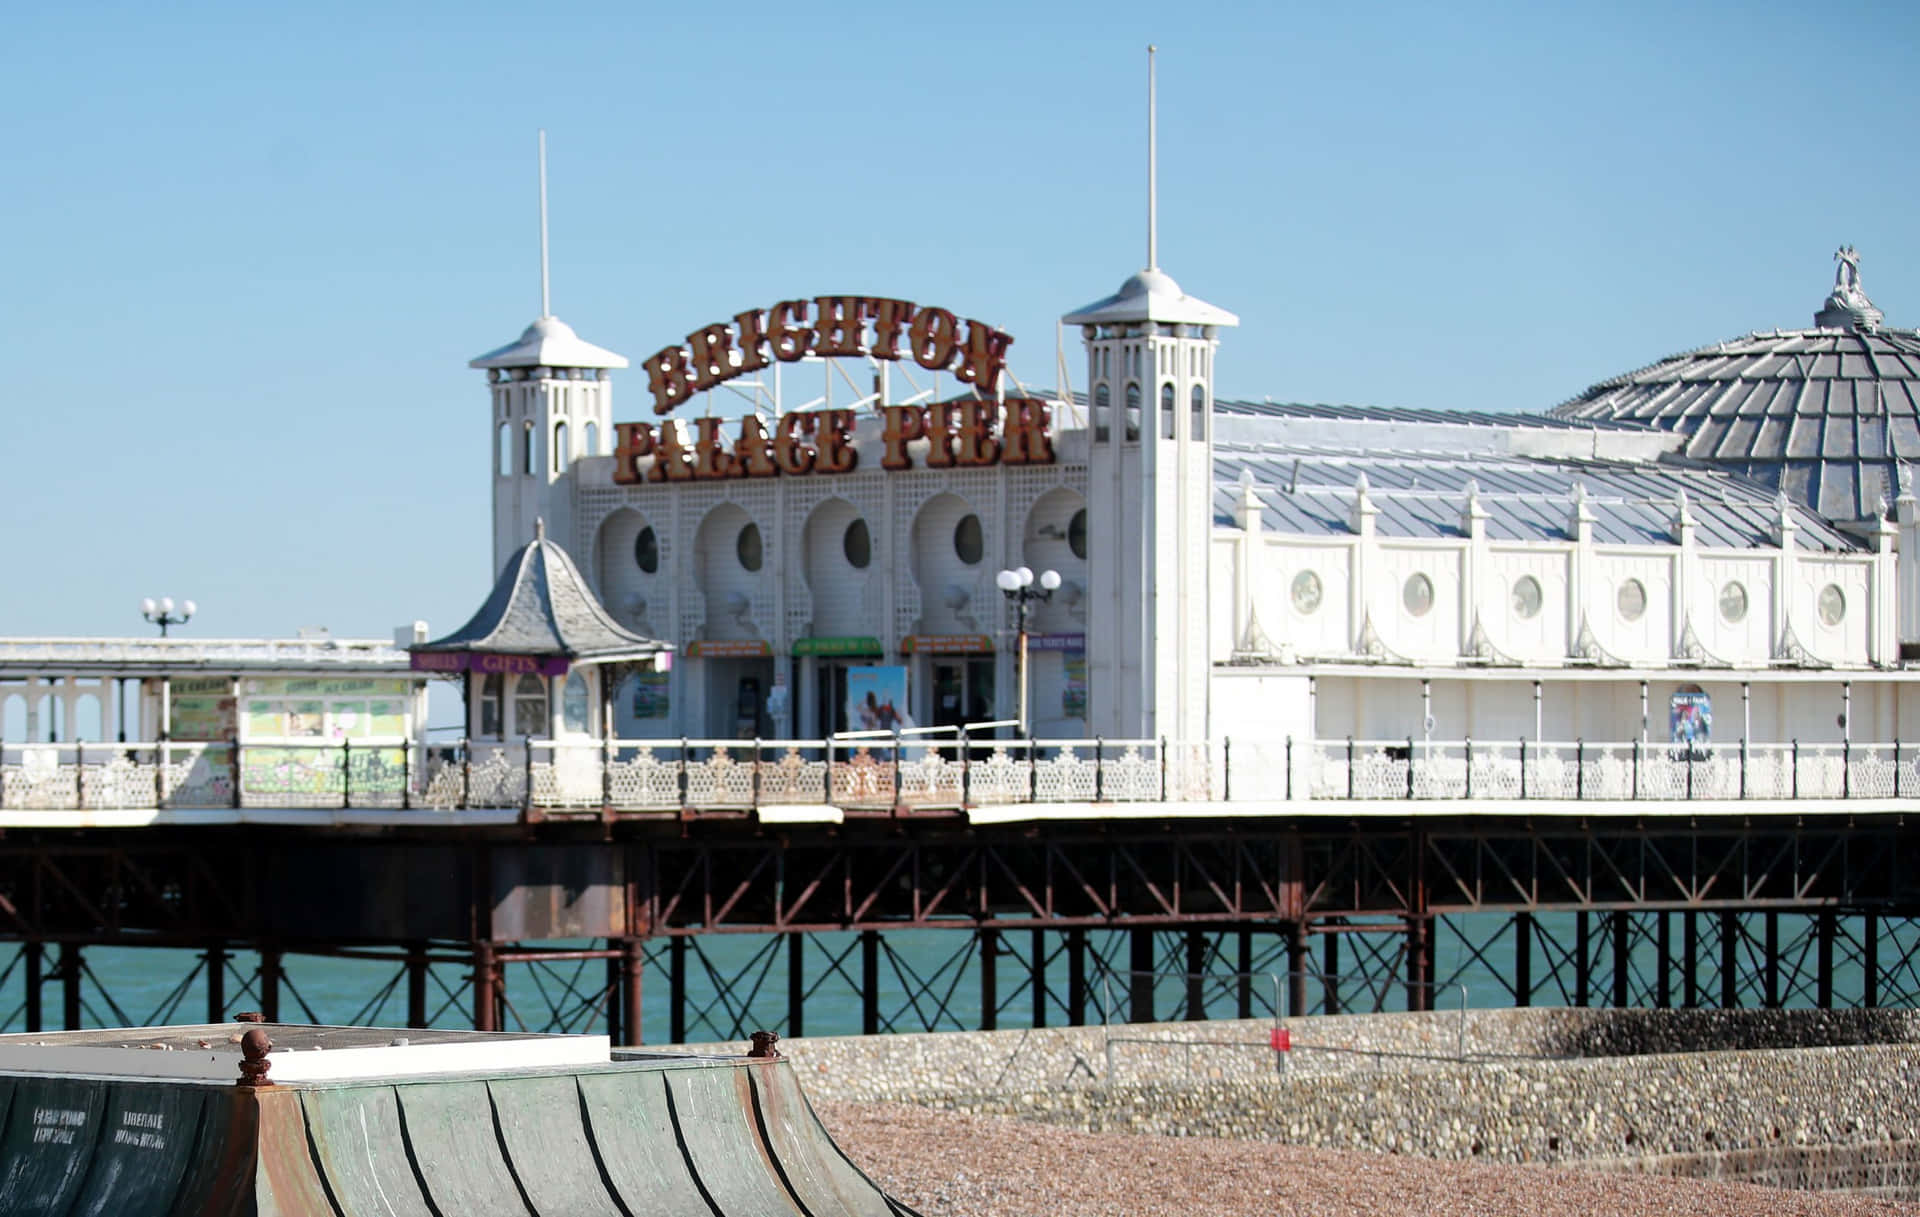 Brighton Pier at Twilight Wallpaper